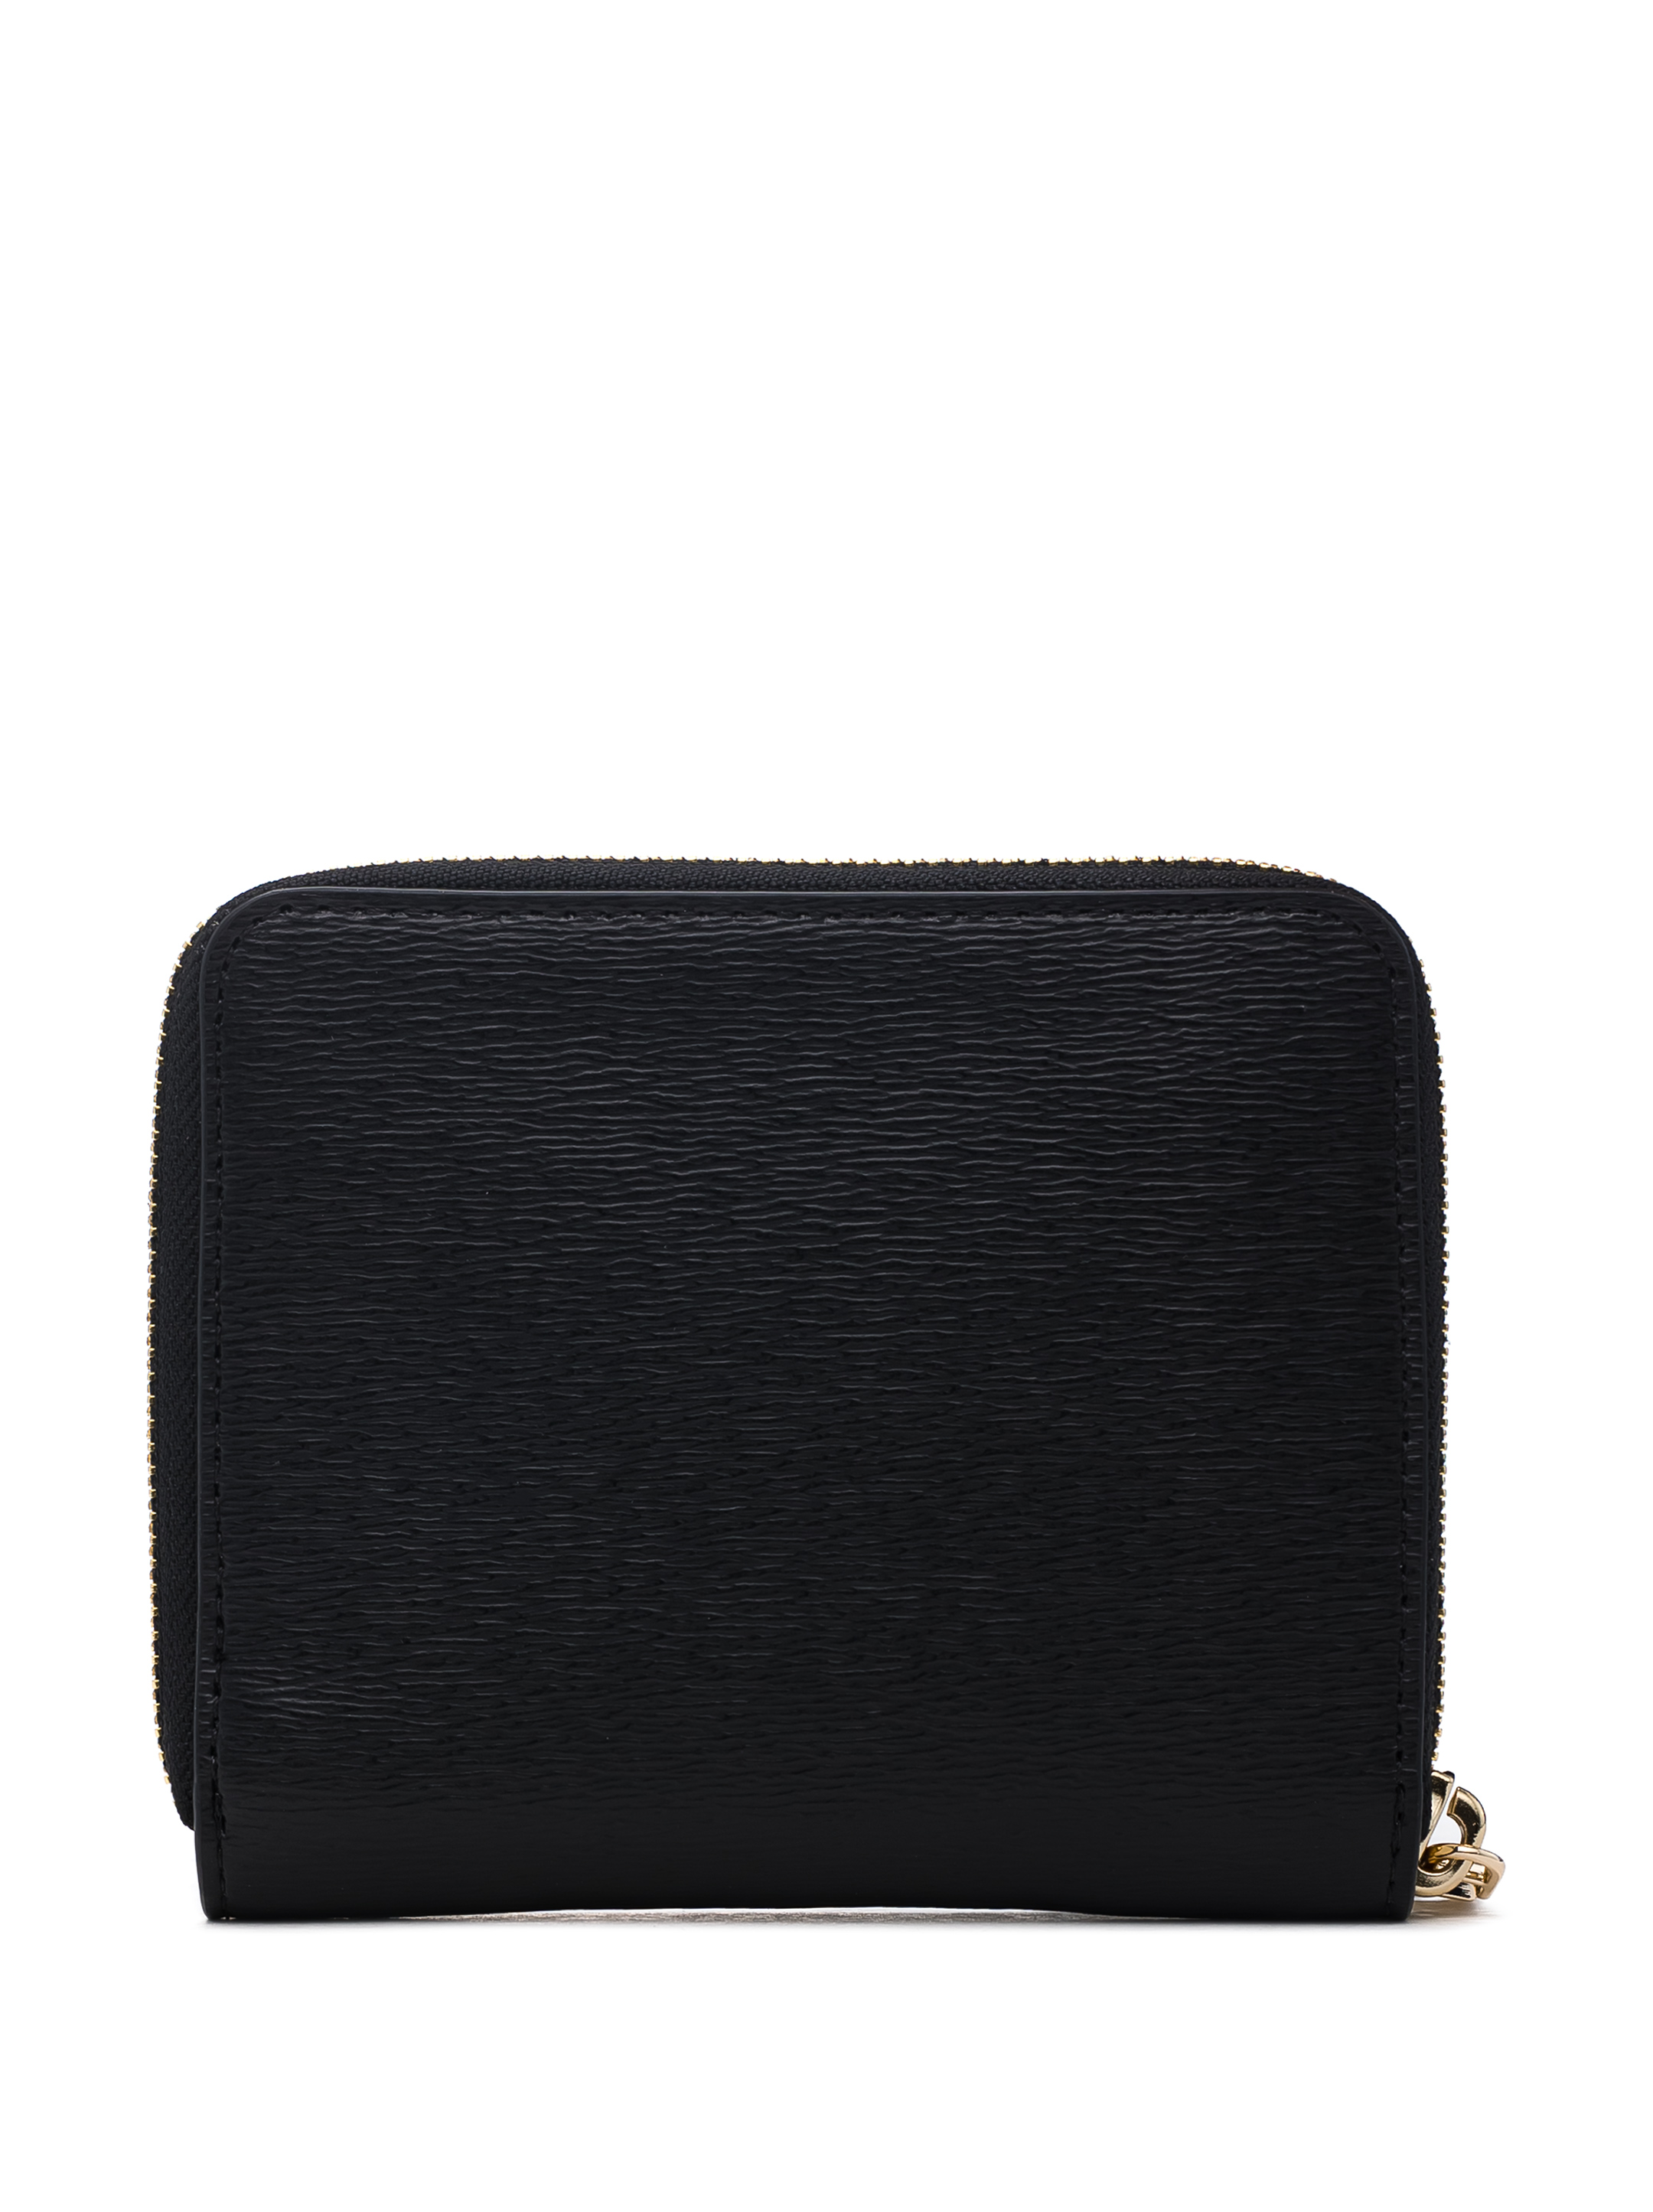 DKNY Womens Wallet, Black (Black/Gold) - R8313656: Buy Online at Best Price  in UAE - Amazon.ae